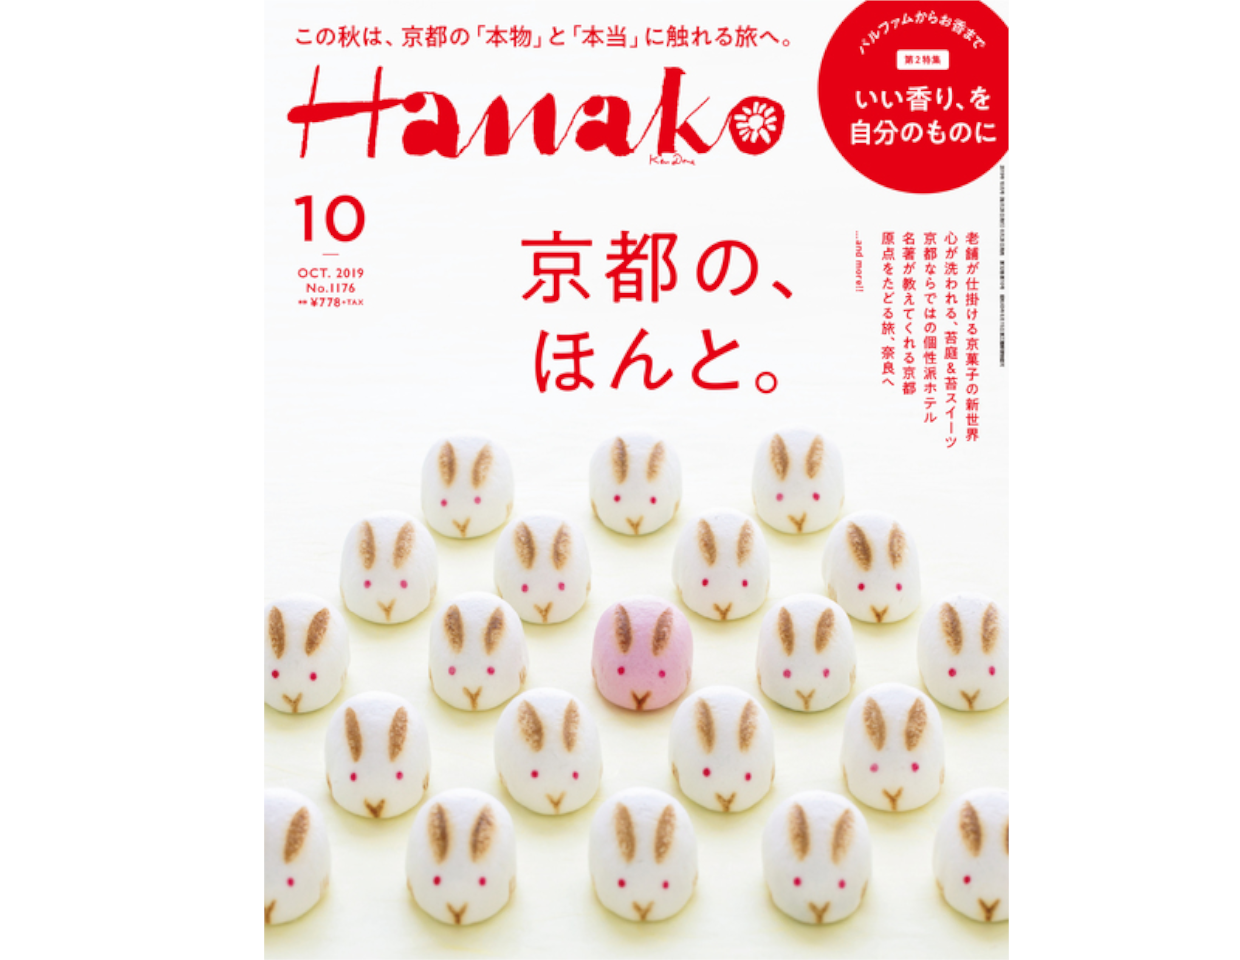 【掲載情報】「Hanako 10月号」にVバスオイルが掲載されました